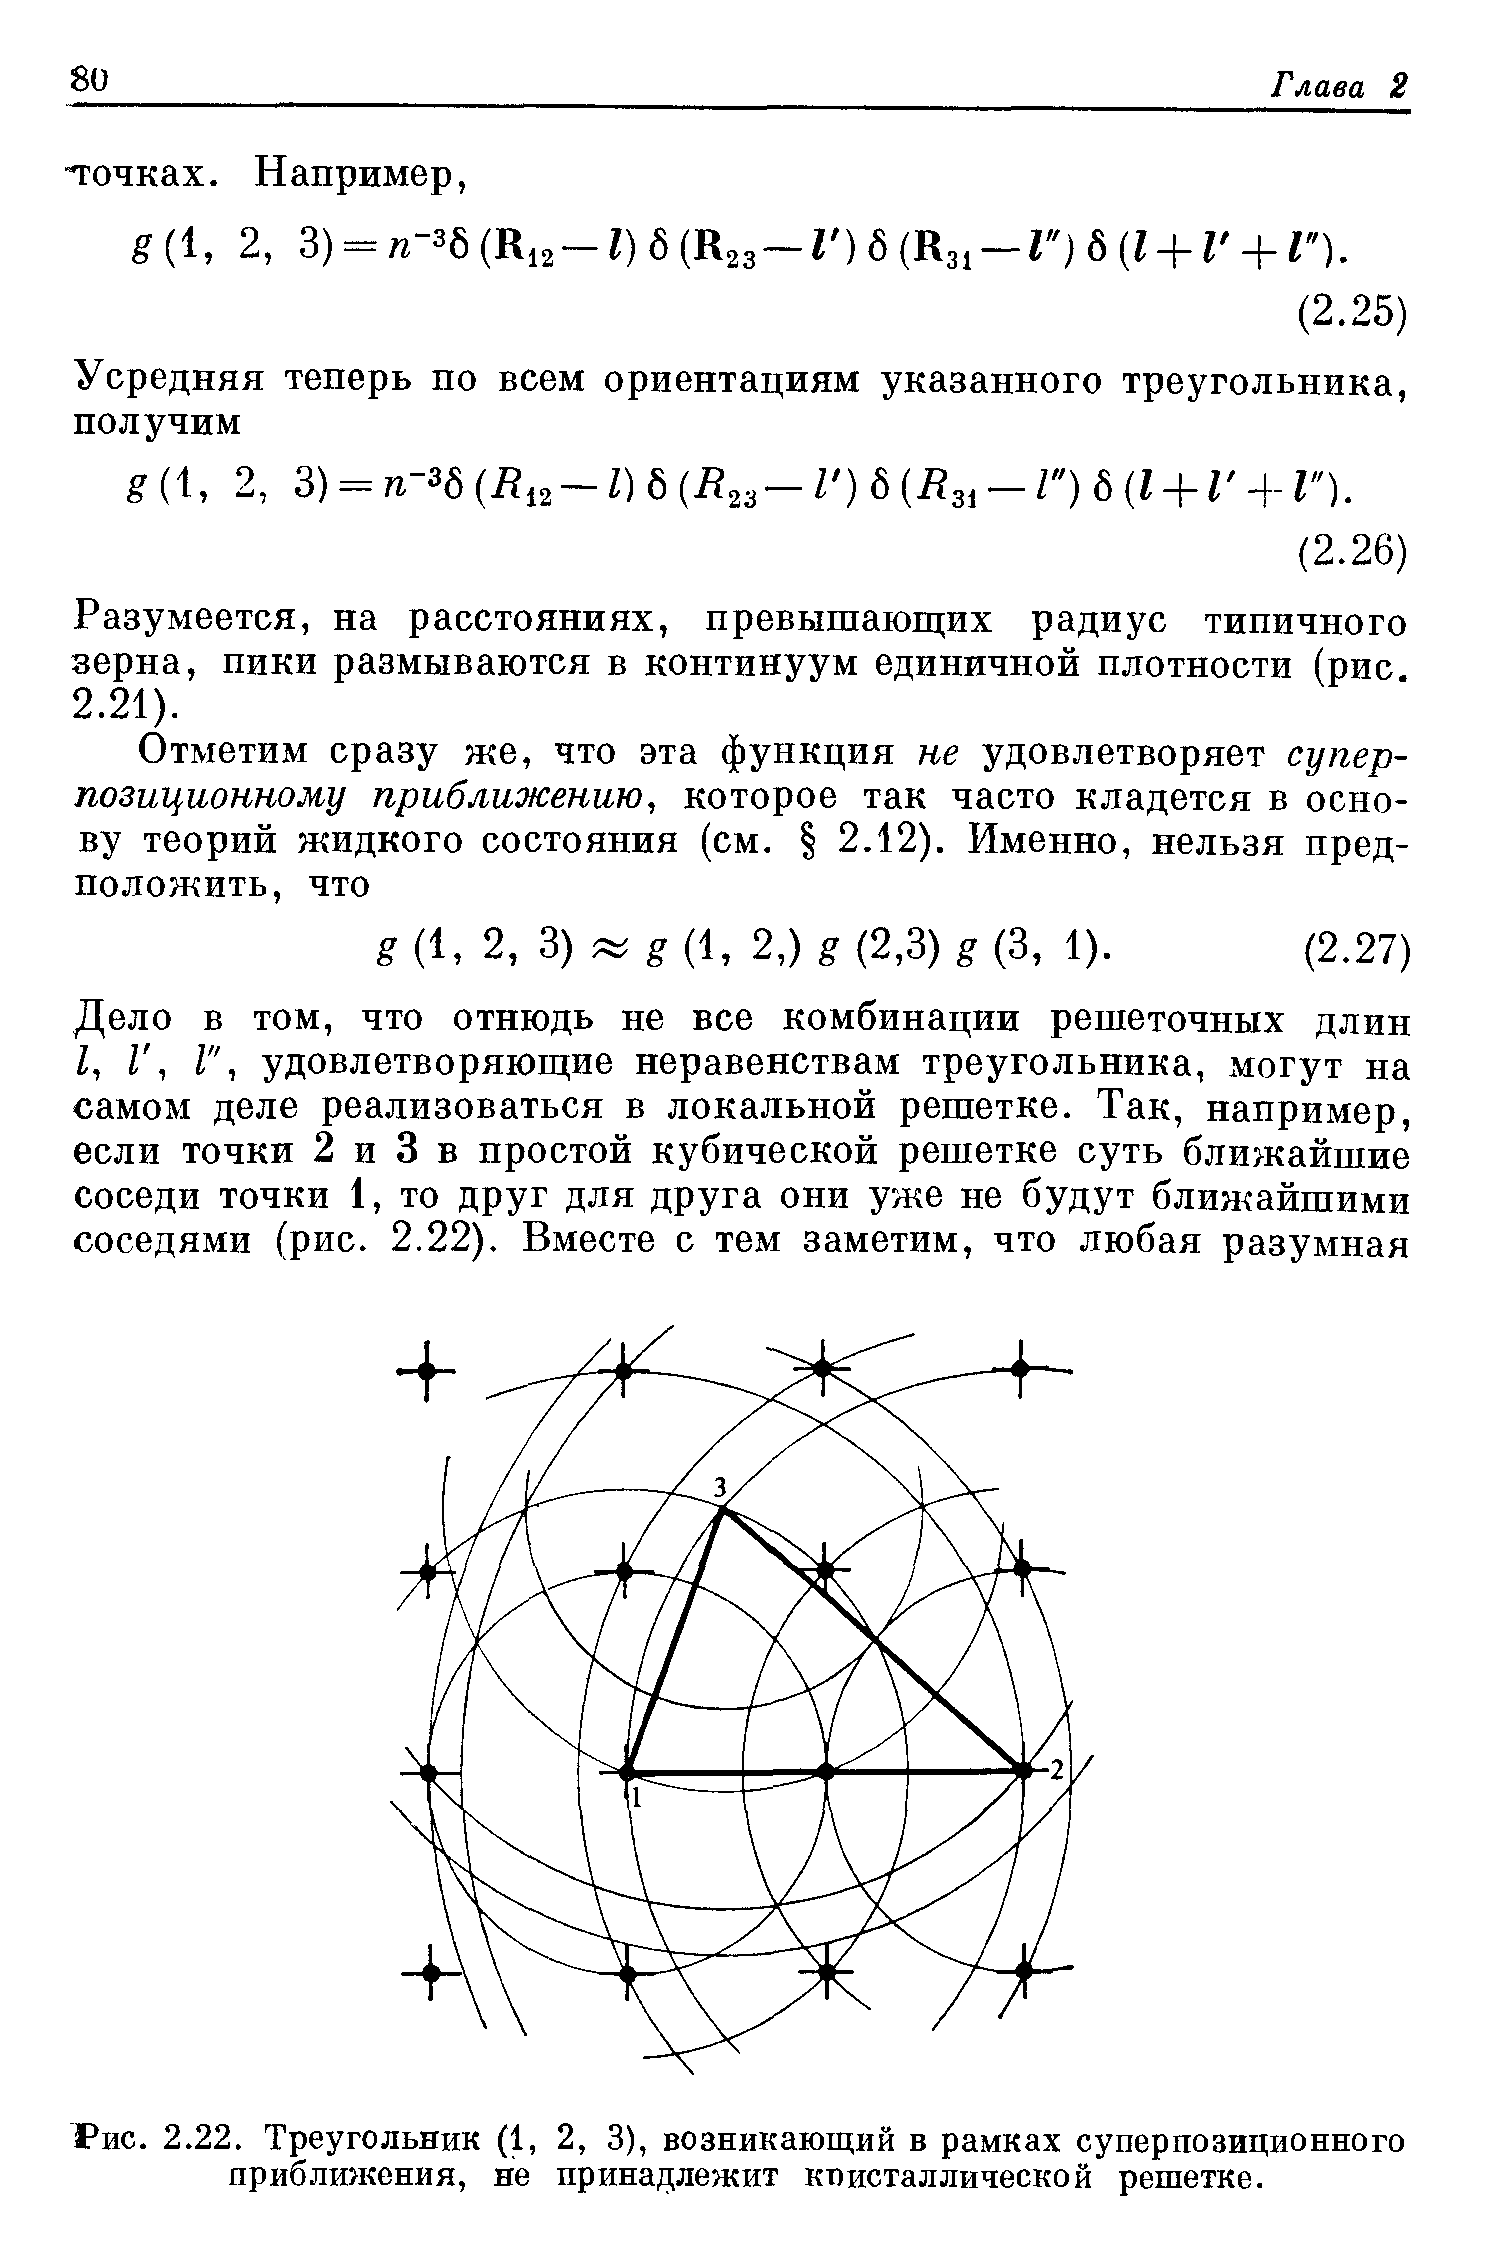 Рис. 2.22. Треугольник (1, 2, 3), возникающий в рамках суперпозиционного приближения, не принадлежит кт)исталлической решетке.
